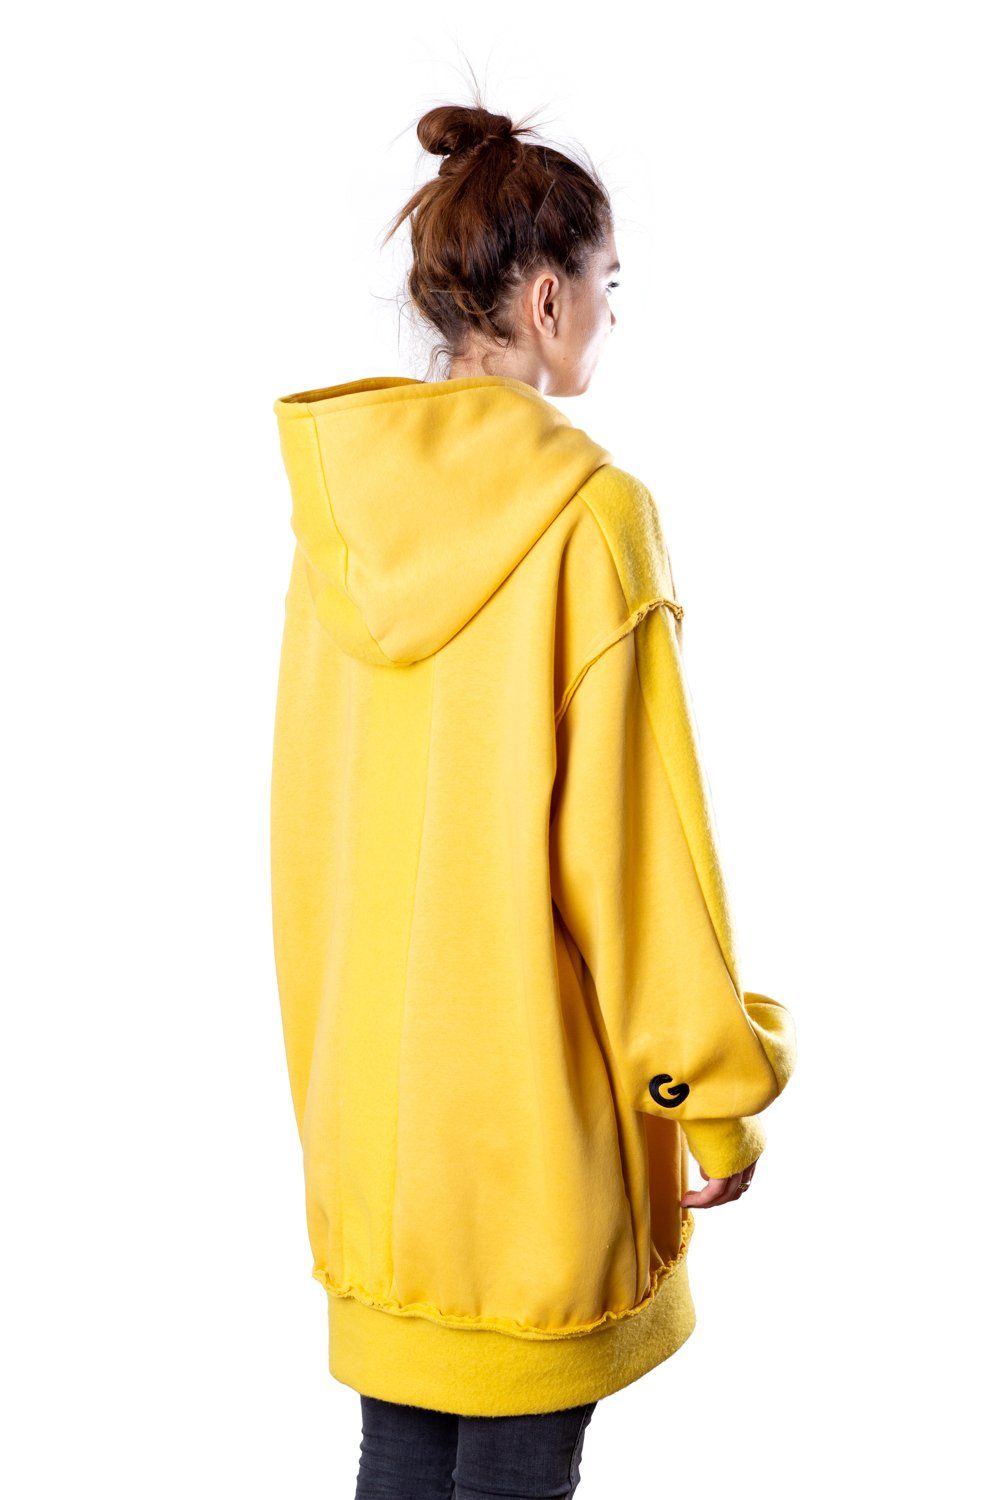 TheG Fresh Oversize Hoody Woman // yellow